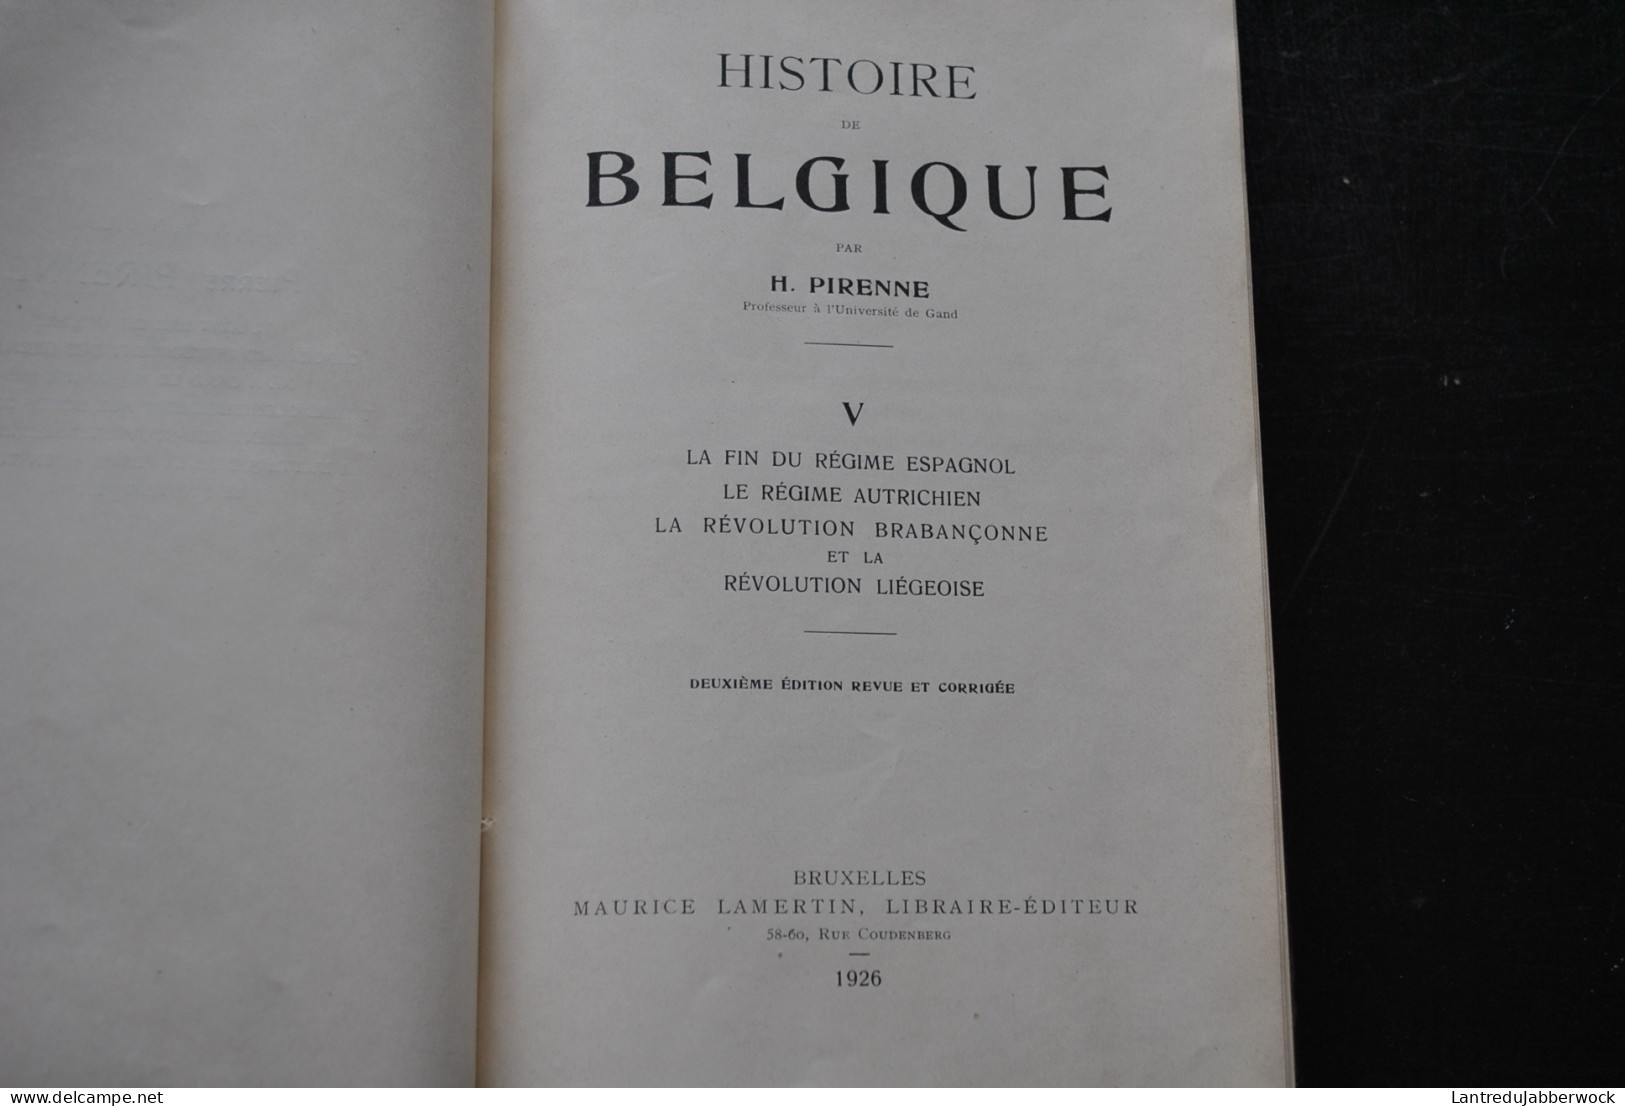 Henri PIRENNE Histoire de Belgique COMPLET 7 Volumes LAMERTIN 1909 1932 Des origines à la guerre de 1914 Reliure CUIR